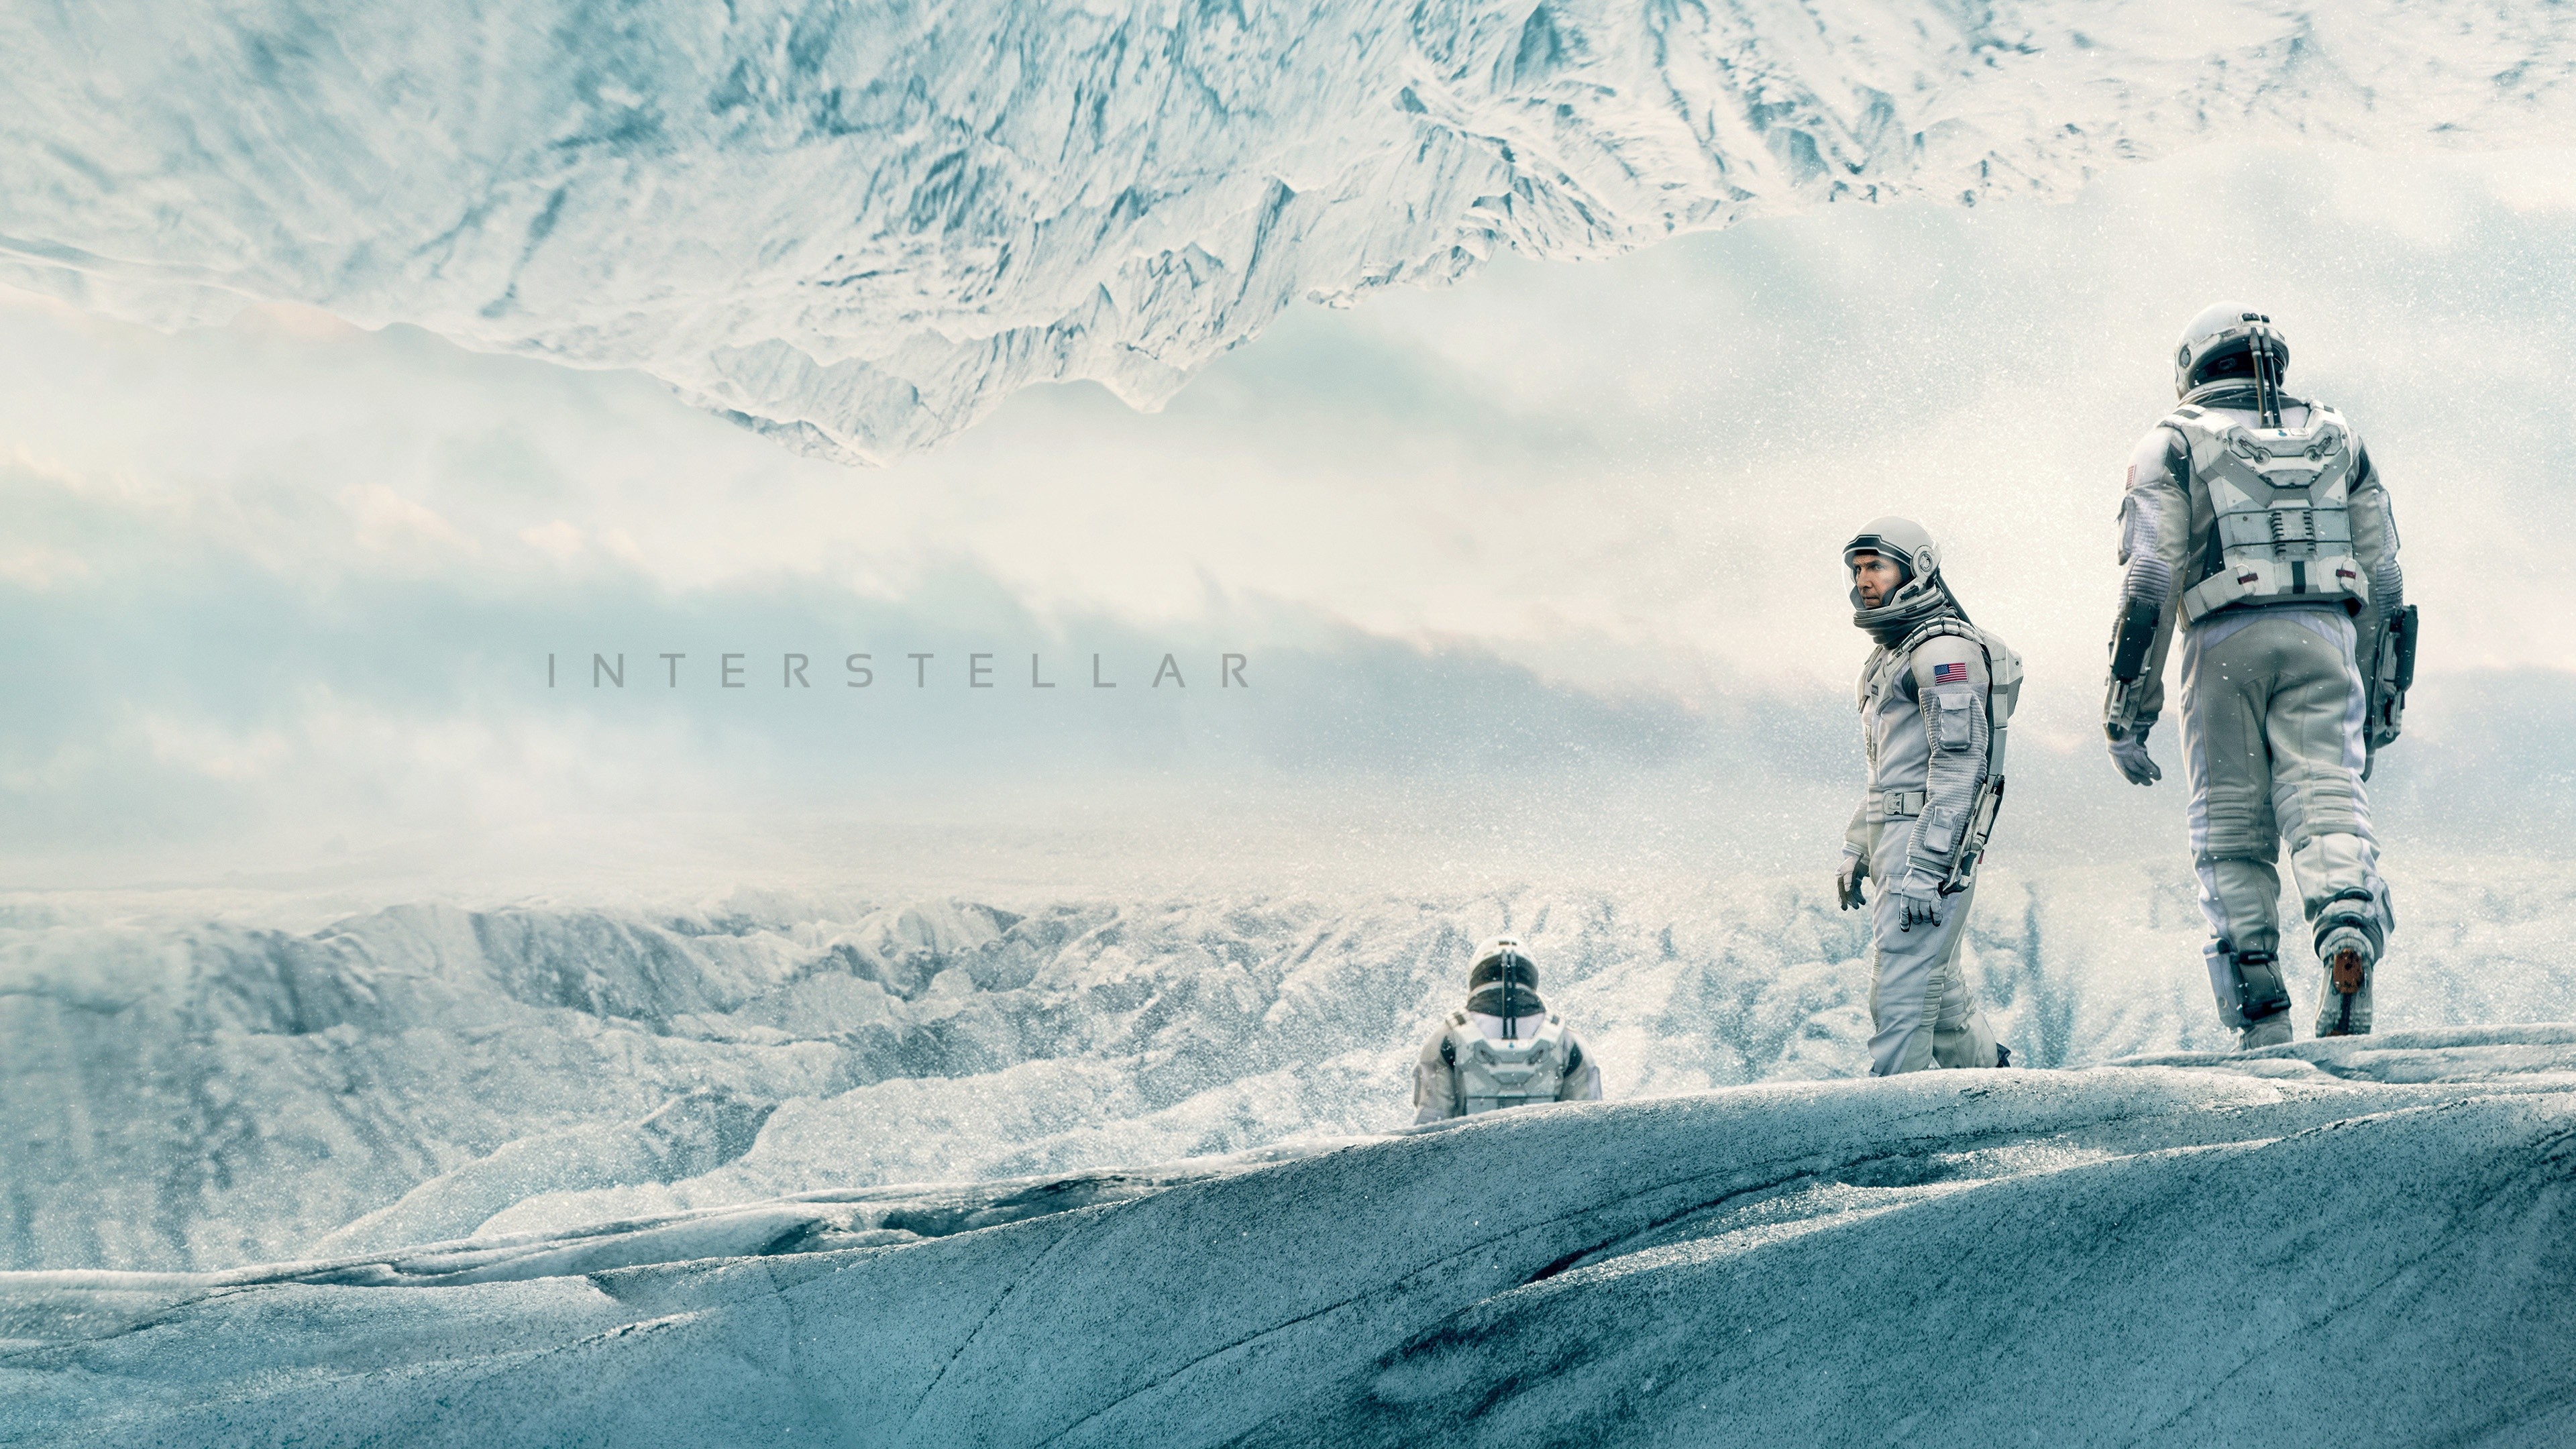 space, Interstellar (movie), Film Stills Wallpaper